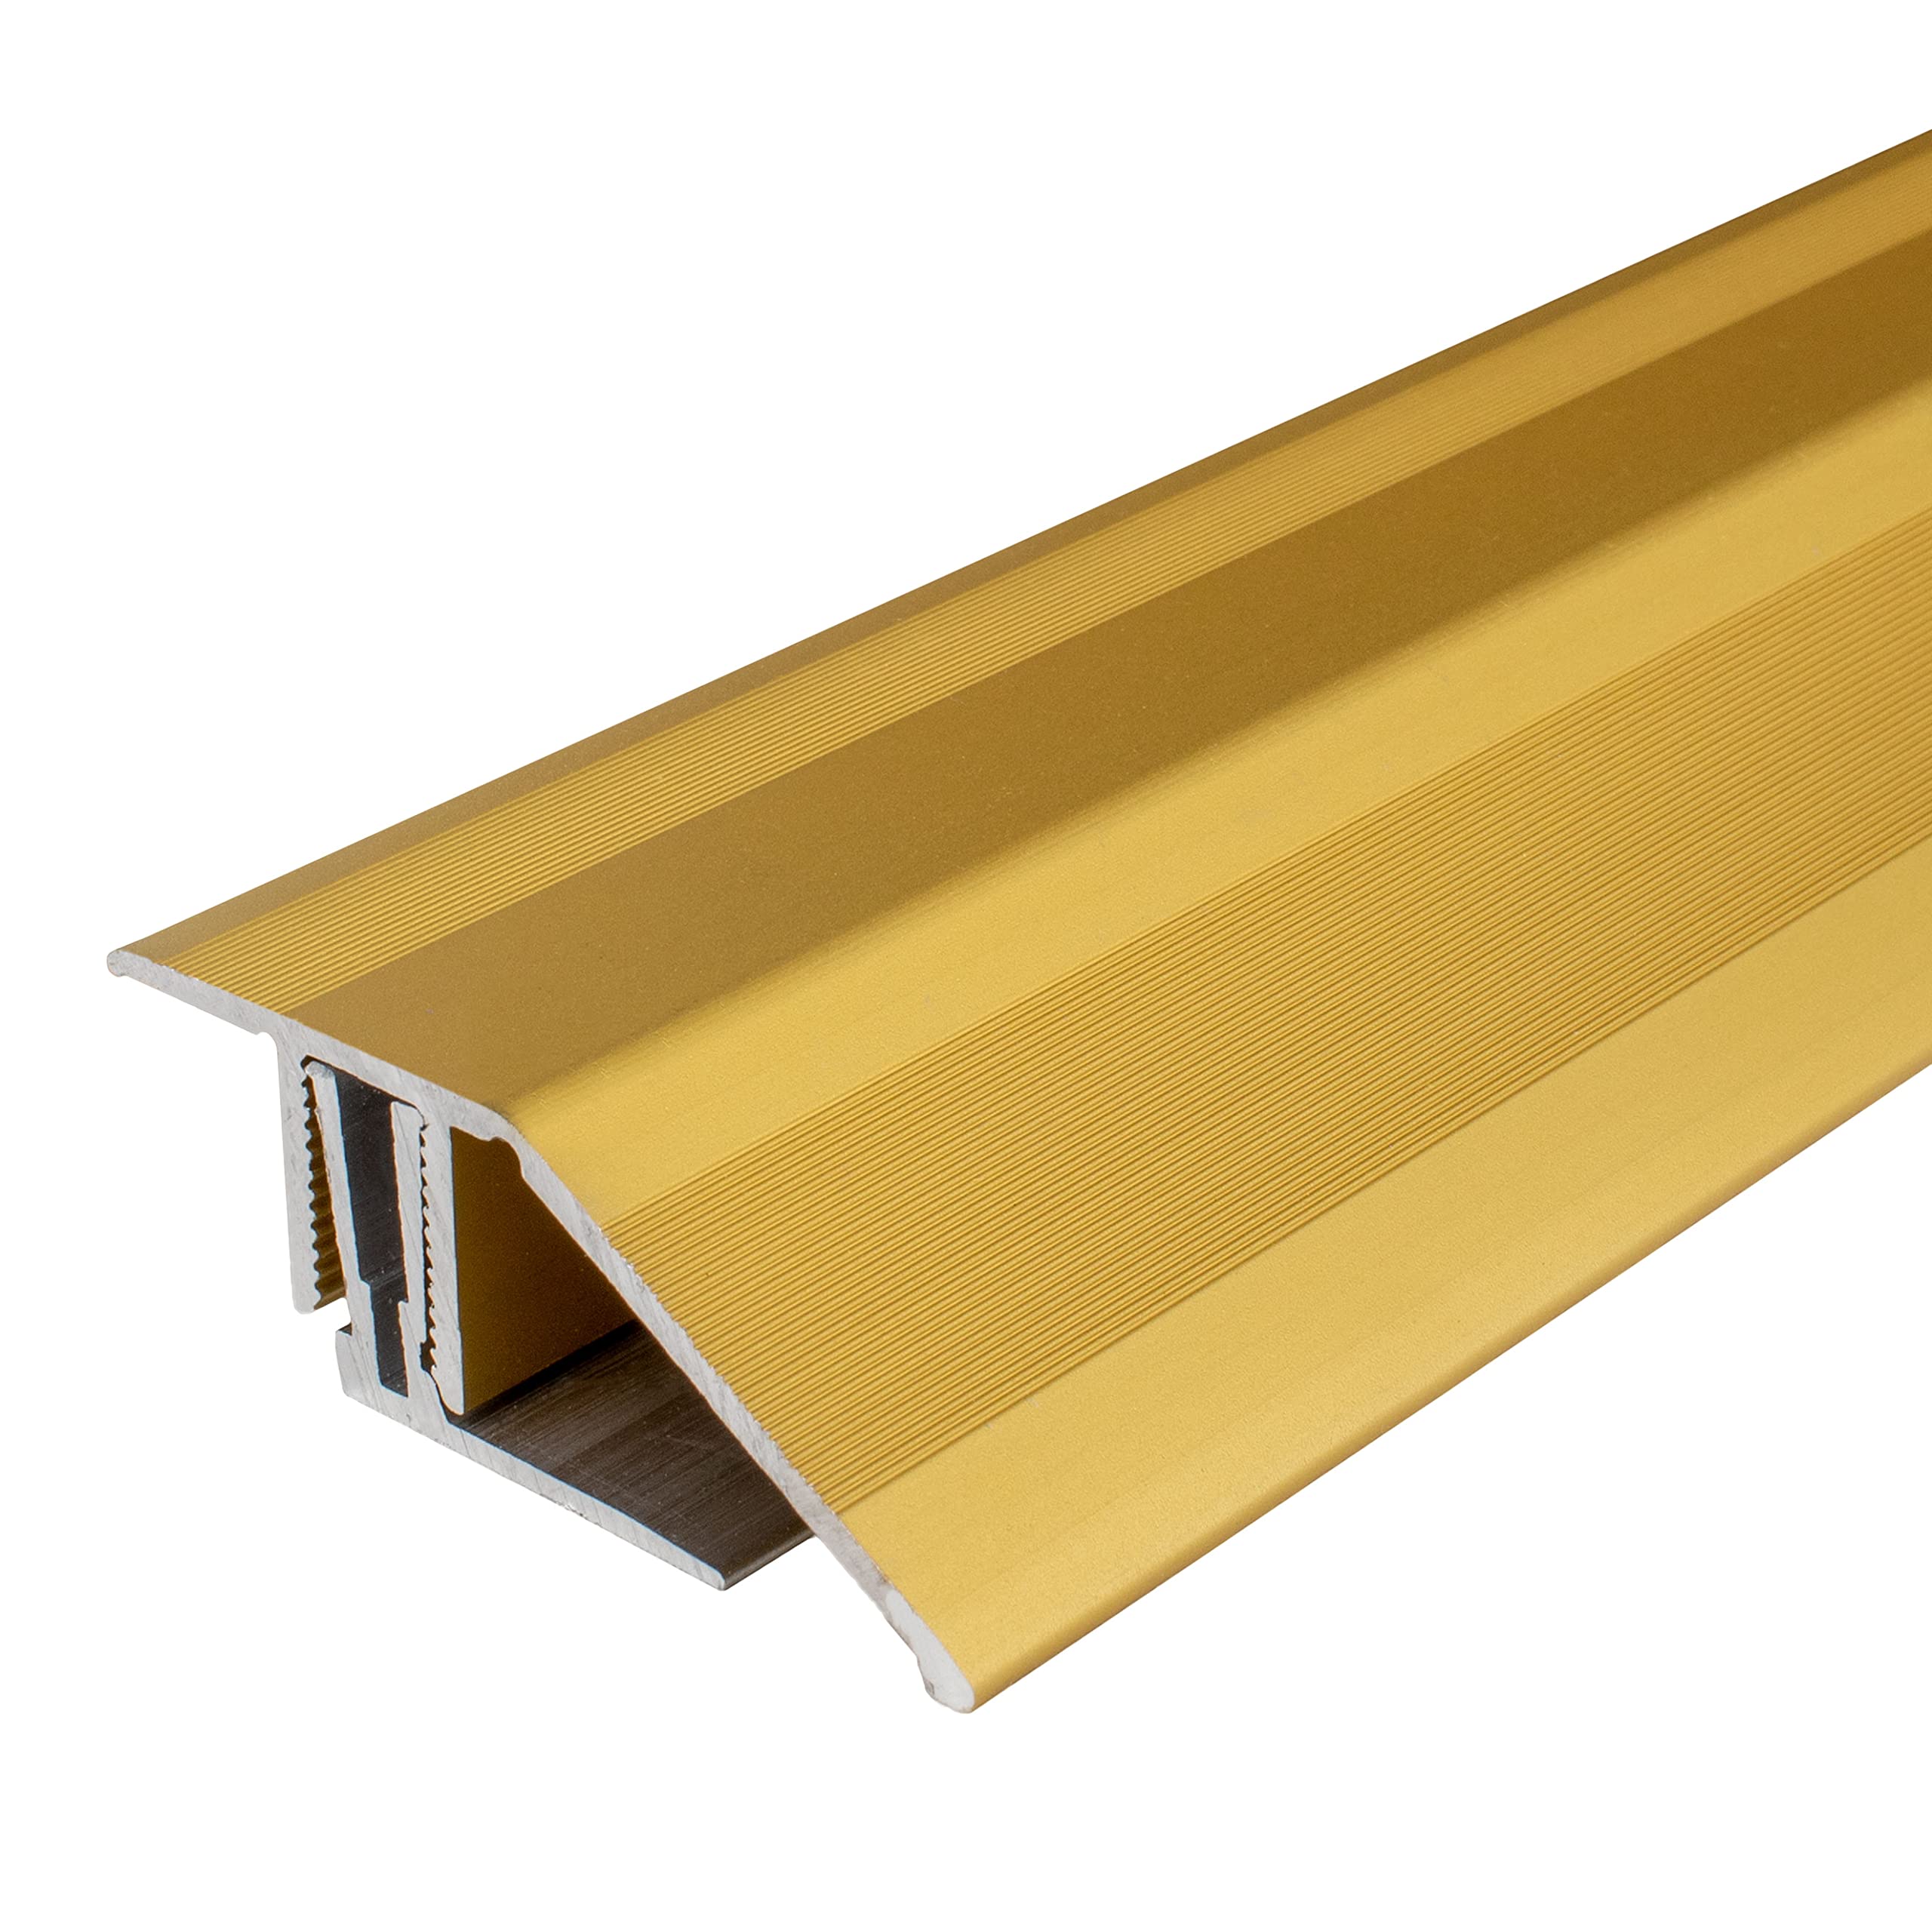 Ausgleichsprofil | Aluminium | Goldfarbig | Breite 50.5 mm | Höhe 15-24 mm | Länge 900 mm | Gebohrt/Klicksystem | Anpassungsprofil | 1 Stück